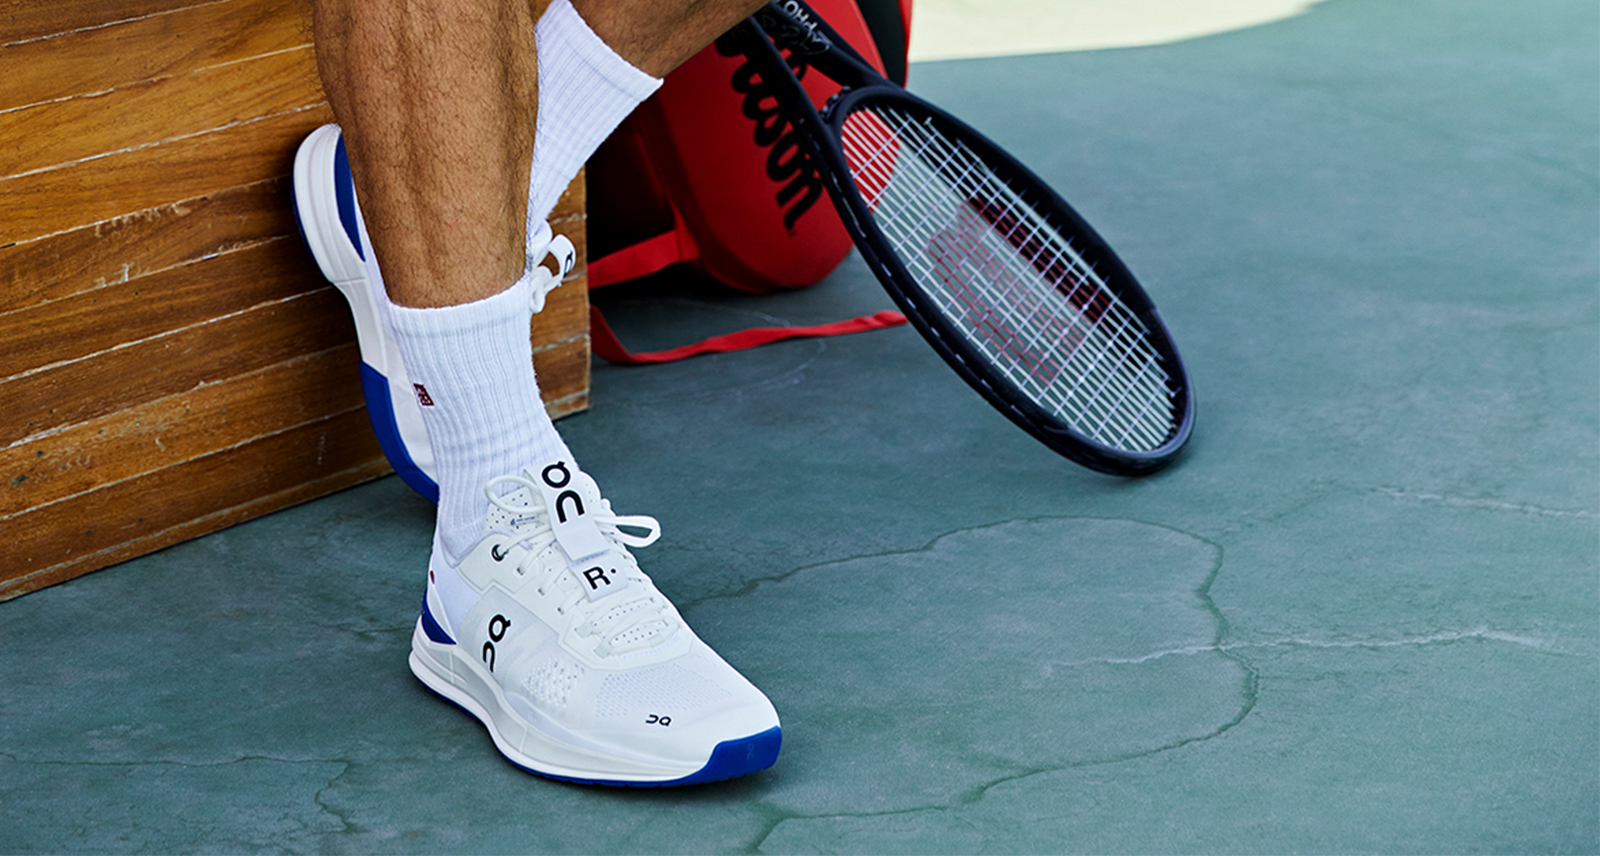 Roger Federer wearing ON Running Tennis shoe on court